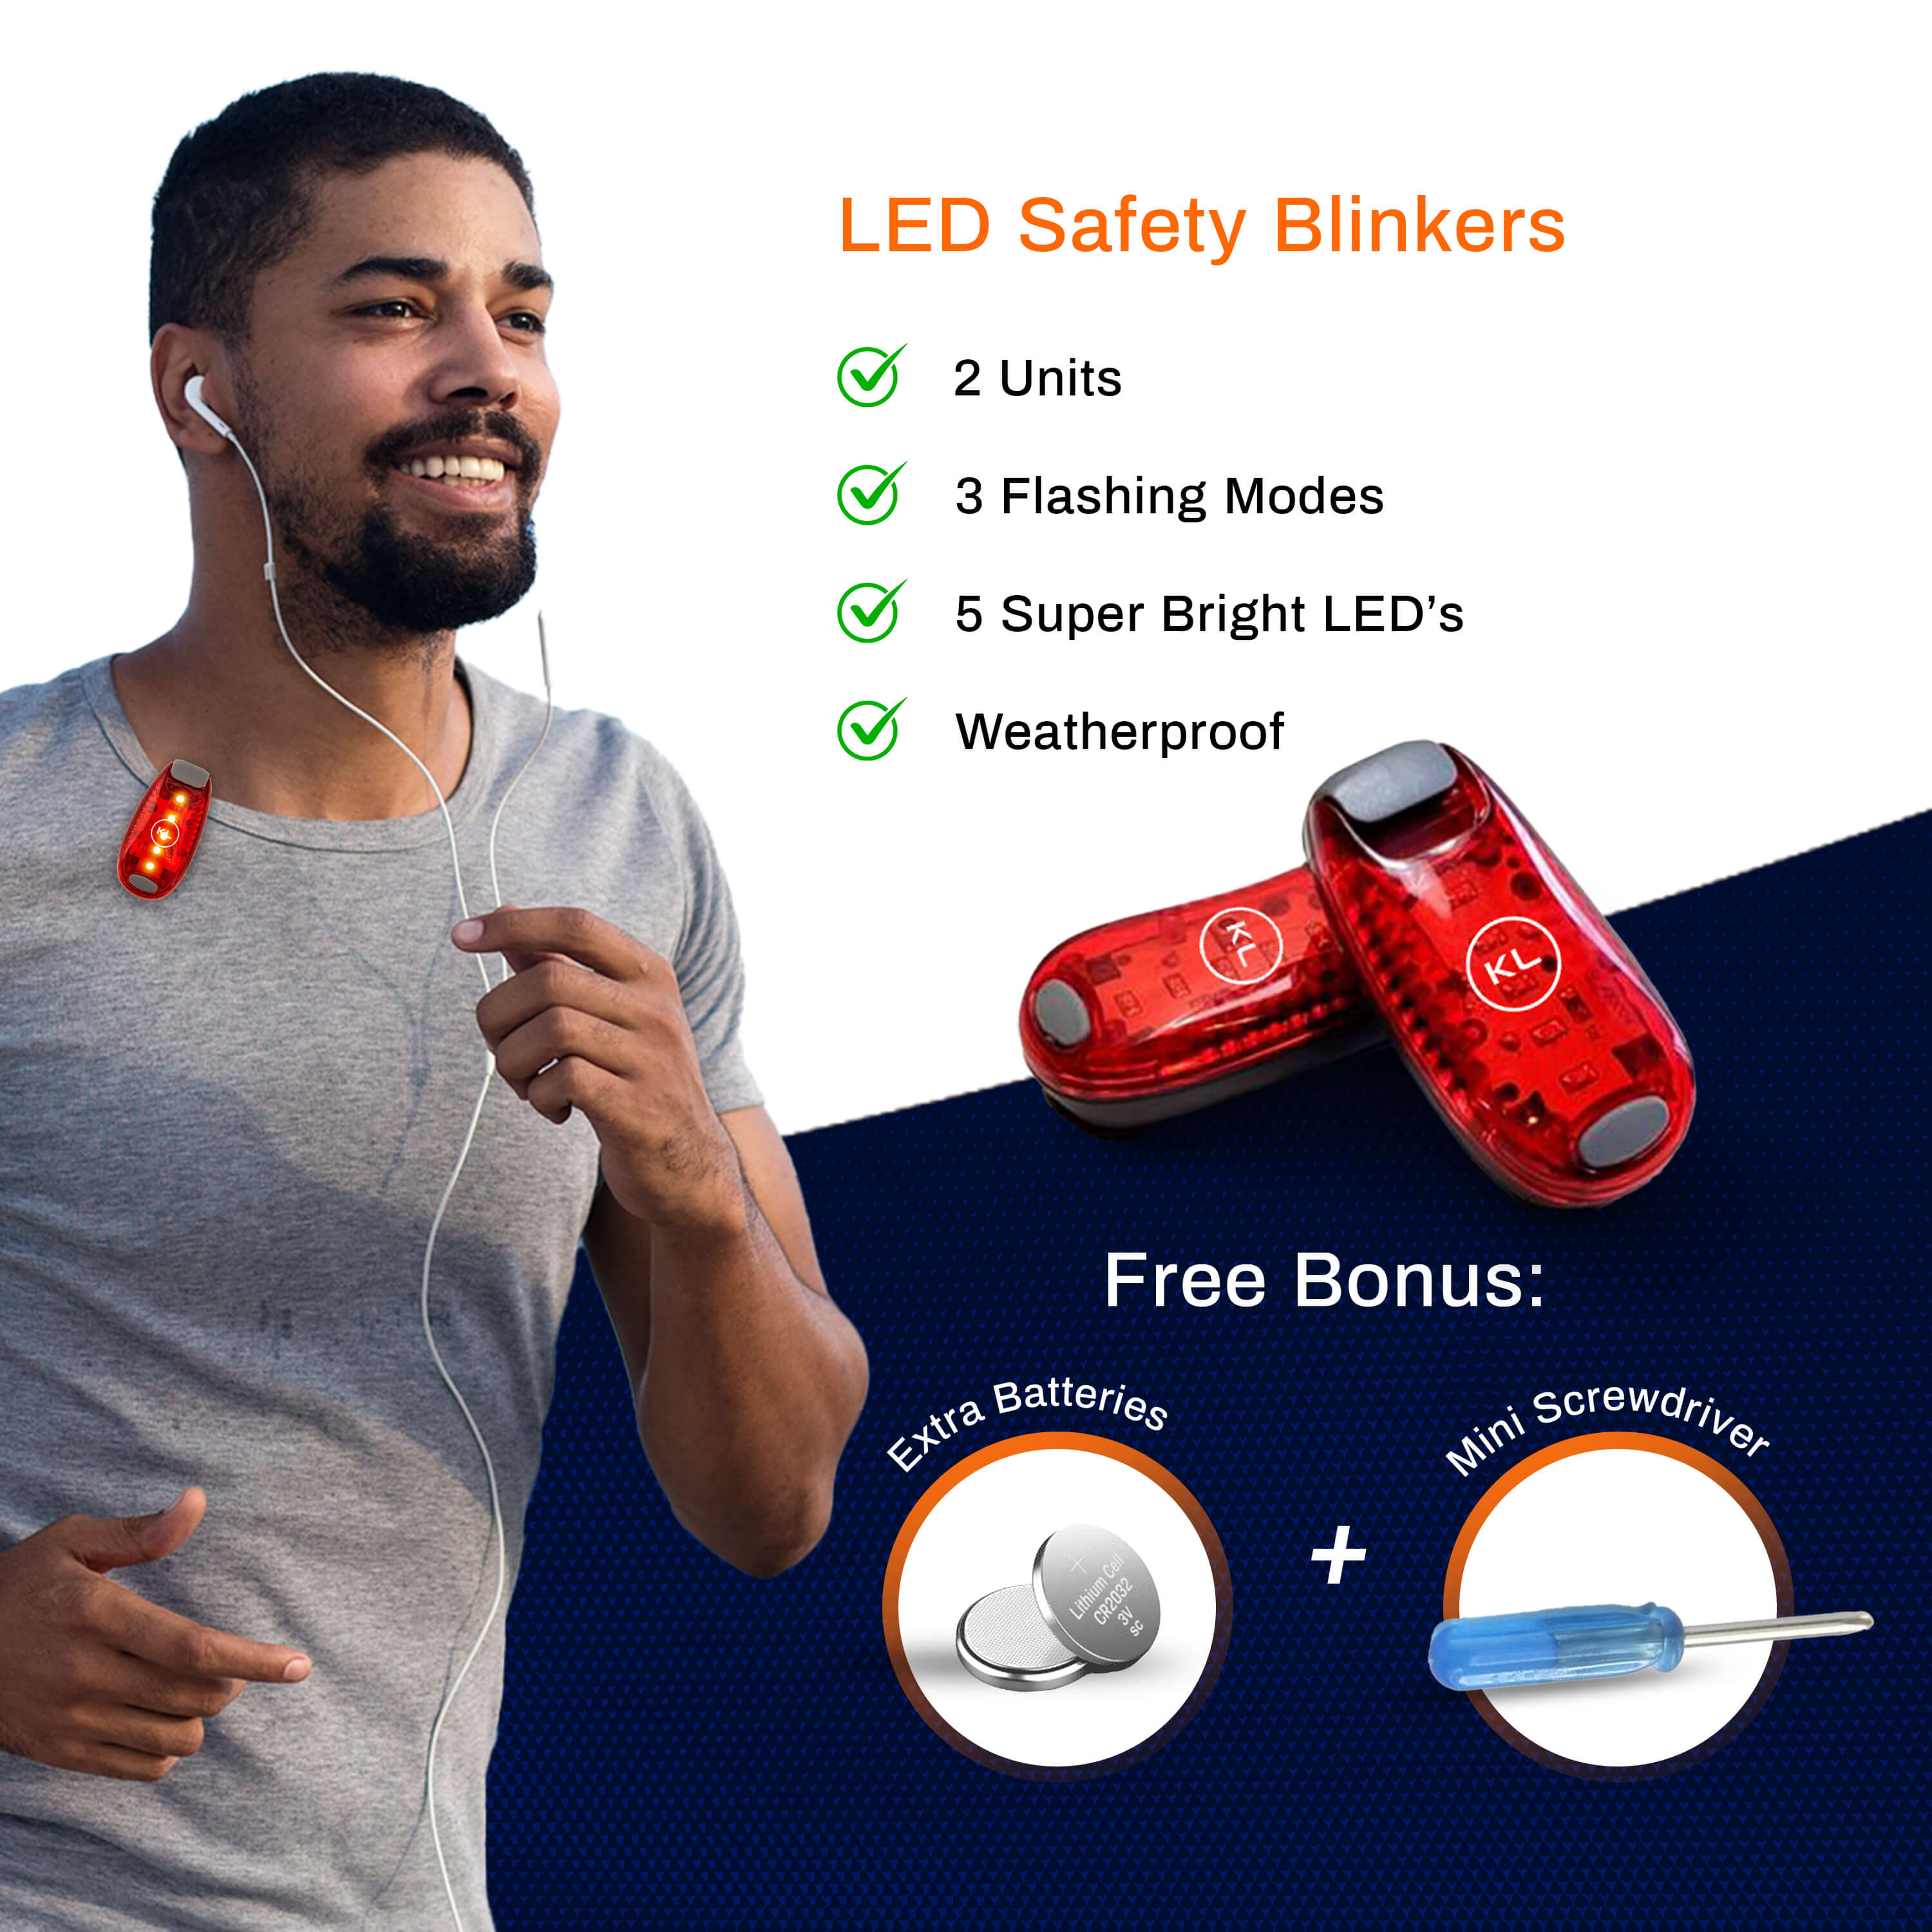 Knuckle Lights Safety Gear Bundle